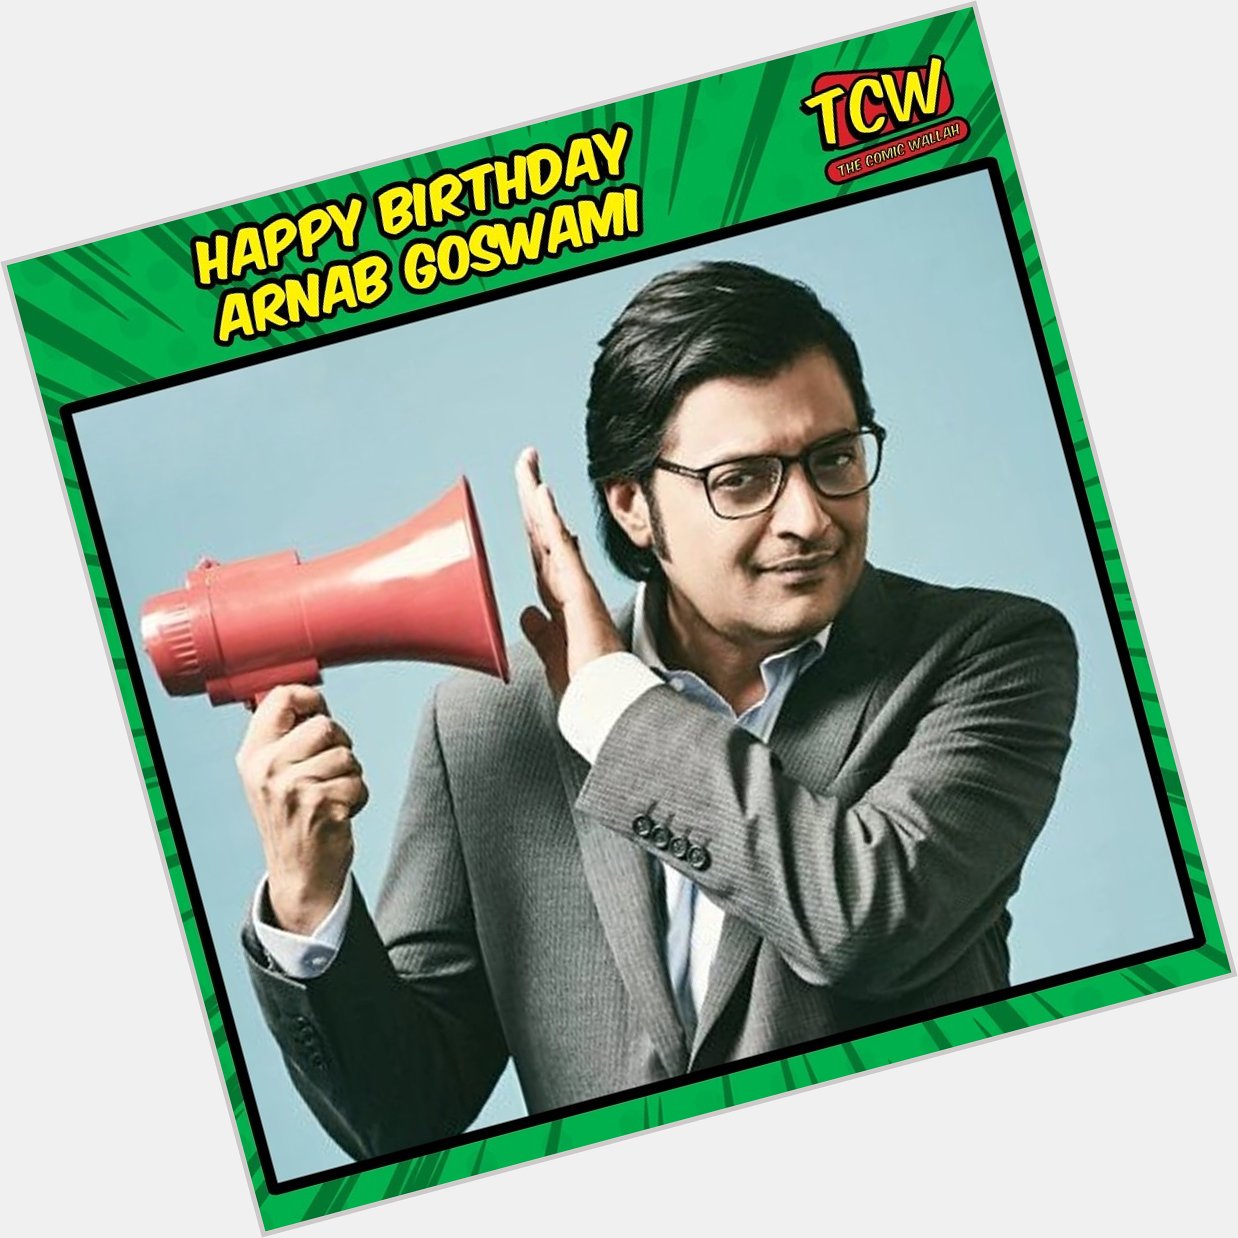 Happy birthday Arnab Goswami! 